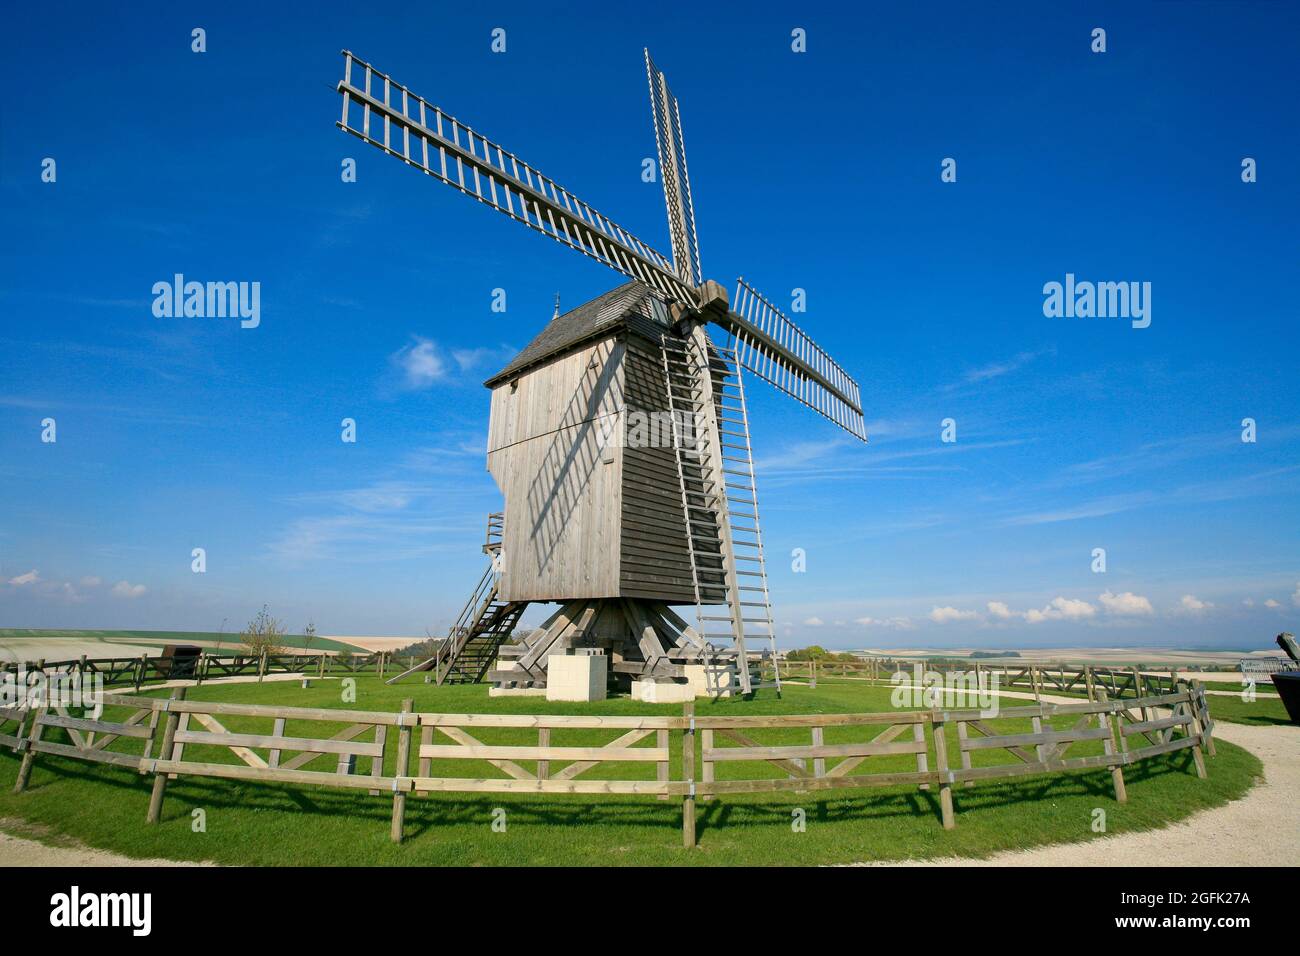 Valmy (nord-est de la France) : moulin sur le plateau de Valmy, une place importante dans l'histoire de la France, première victoire de l'armée révolutionnaire française à t Banque D'Images